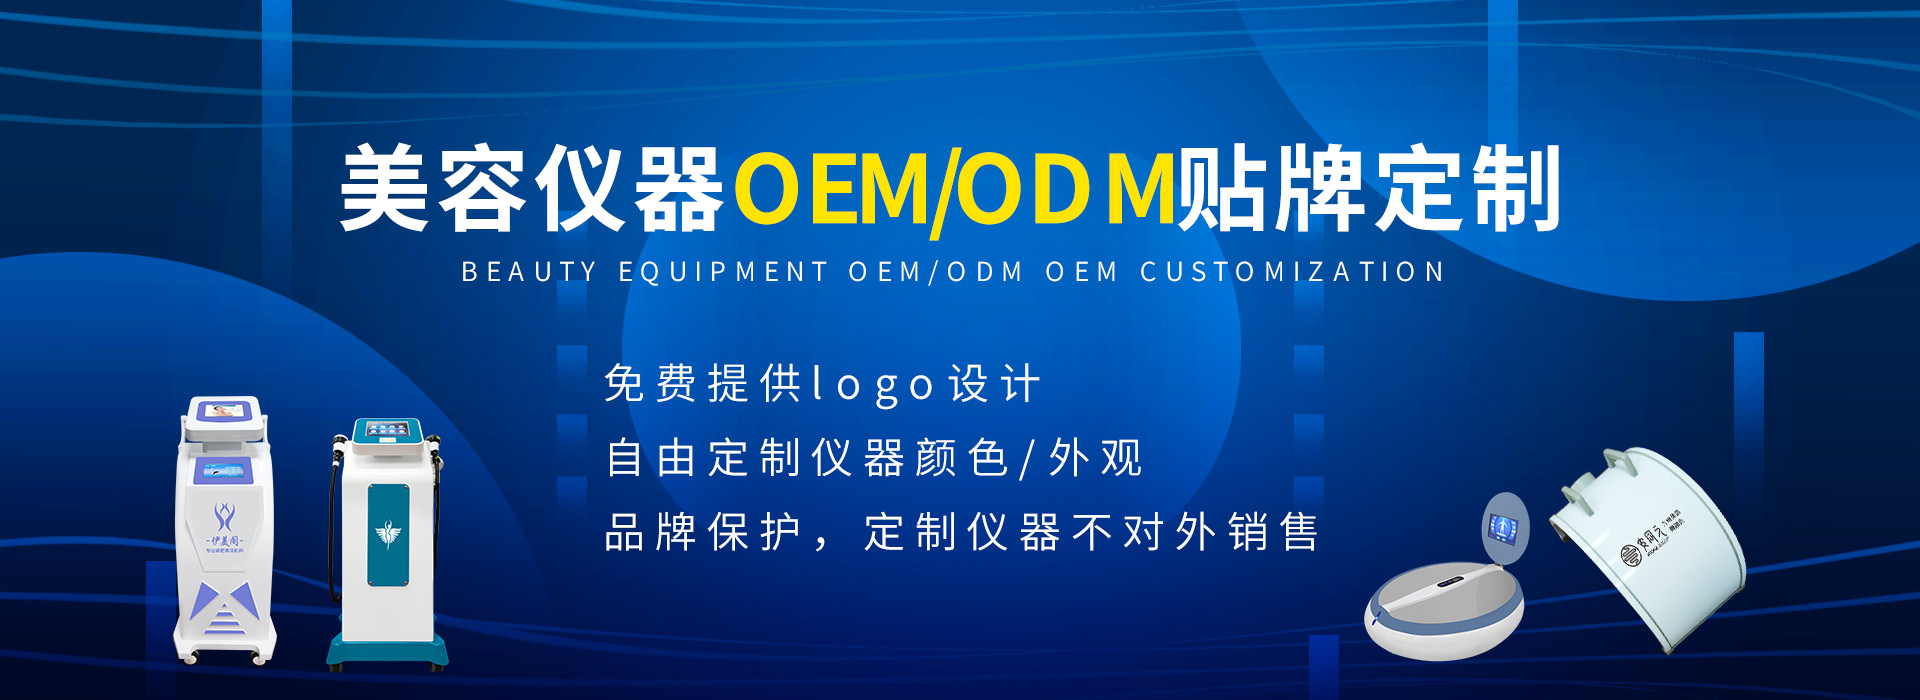 快盈lll仪器厂家提供各类美容仪器批发及OEM/ODM定制服务